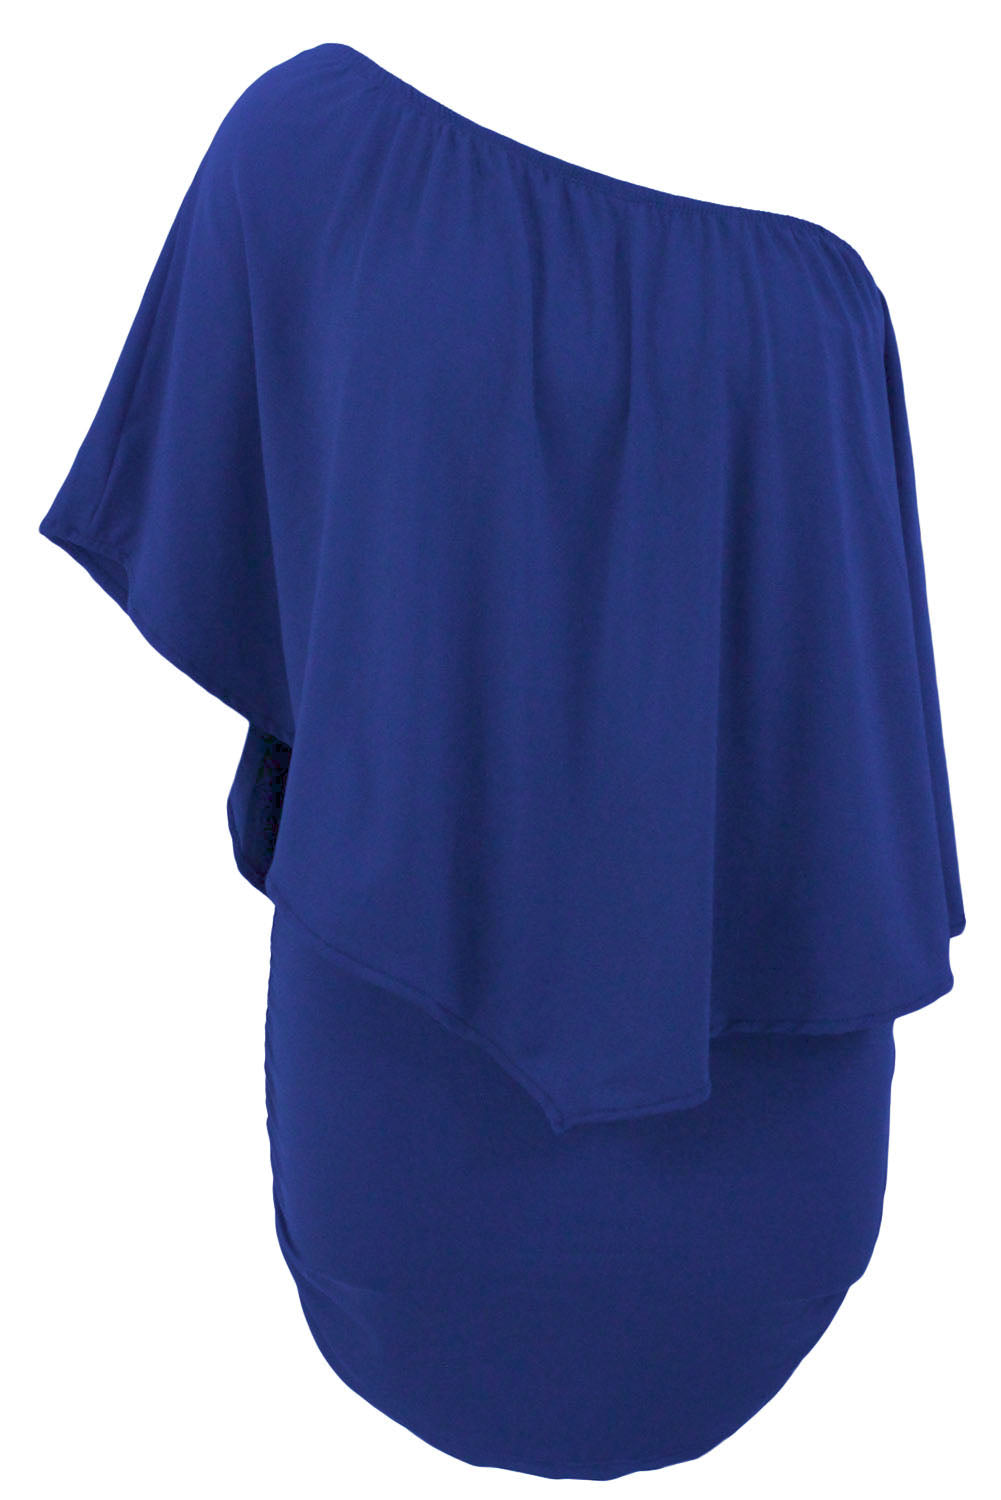 Modra mini pončo obleka z več plastemi